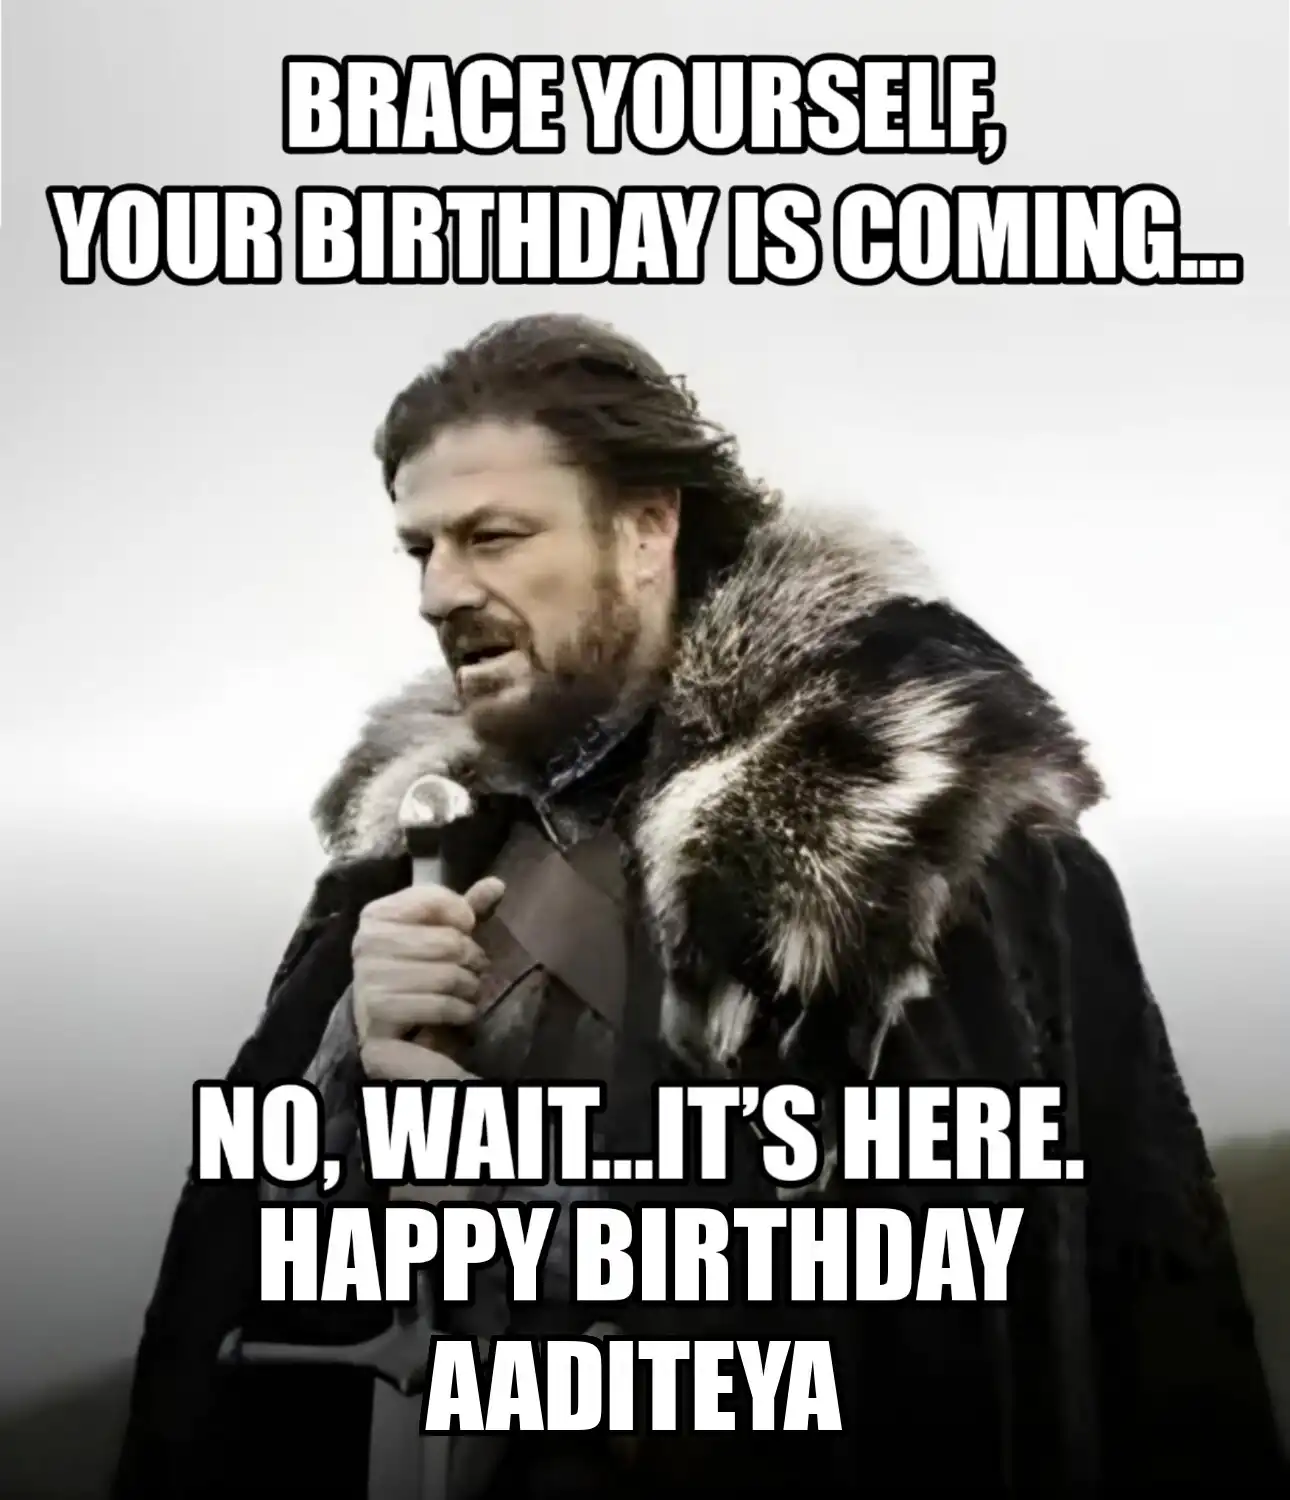 Happy Birthday Aaditeya Brace Yourself Your Birthday Is Coming Meme